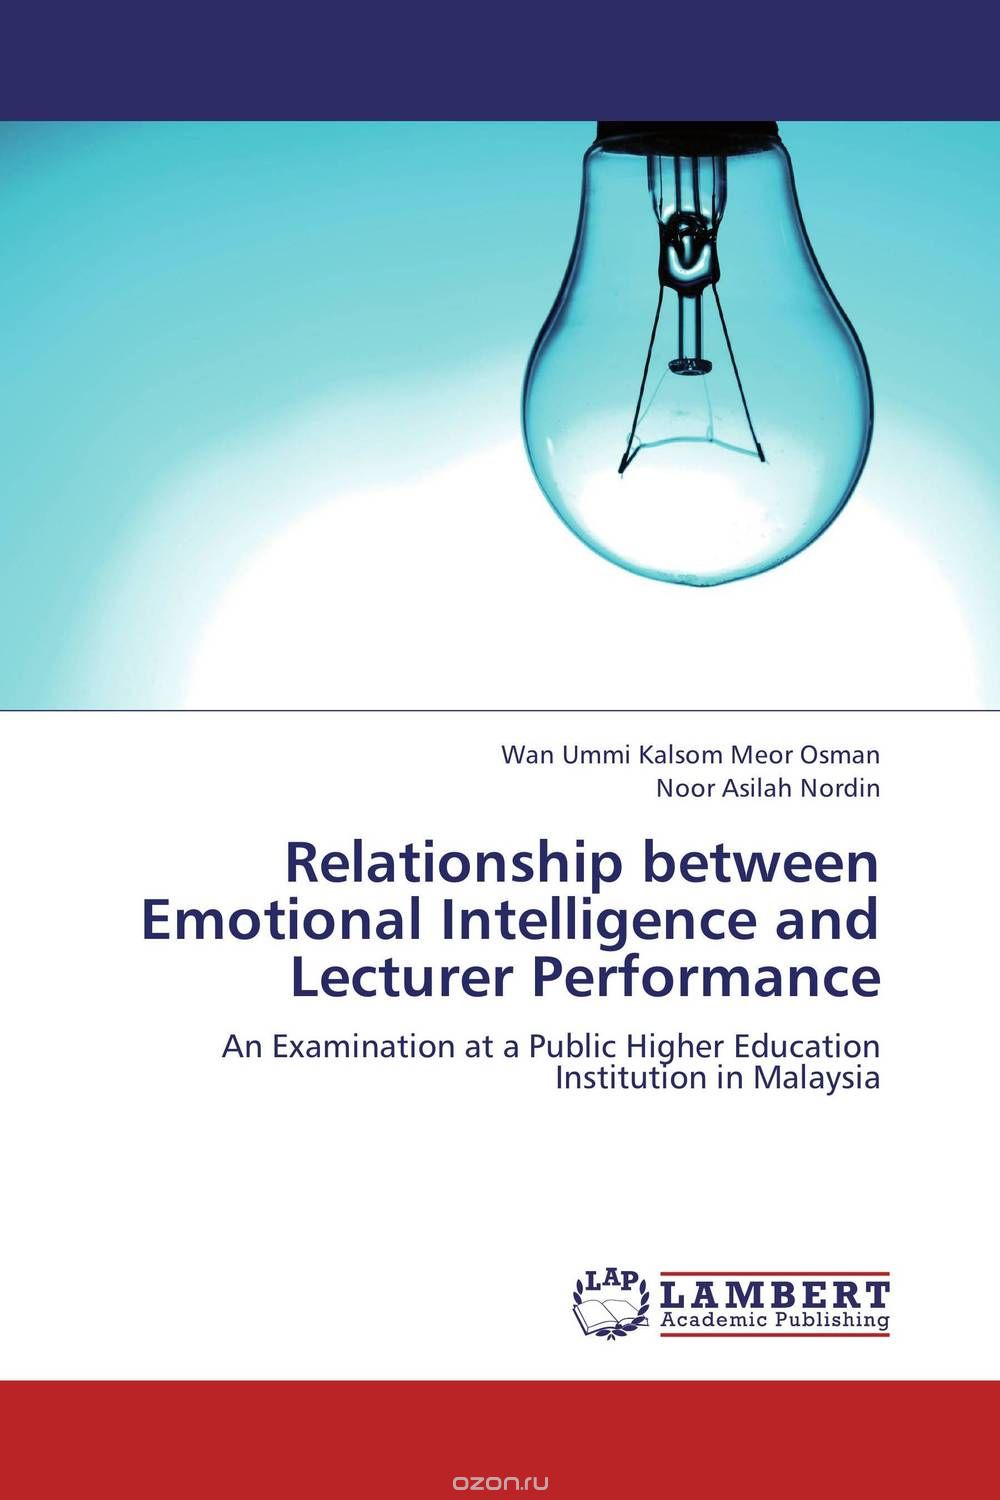 Скачать книгу "Relationship between Emotional Intelligence and Lecturer Performance"